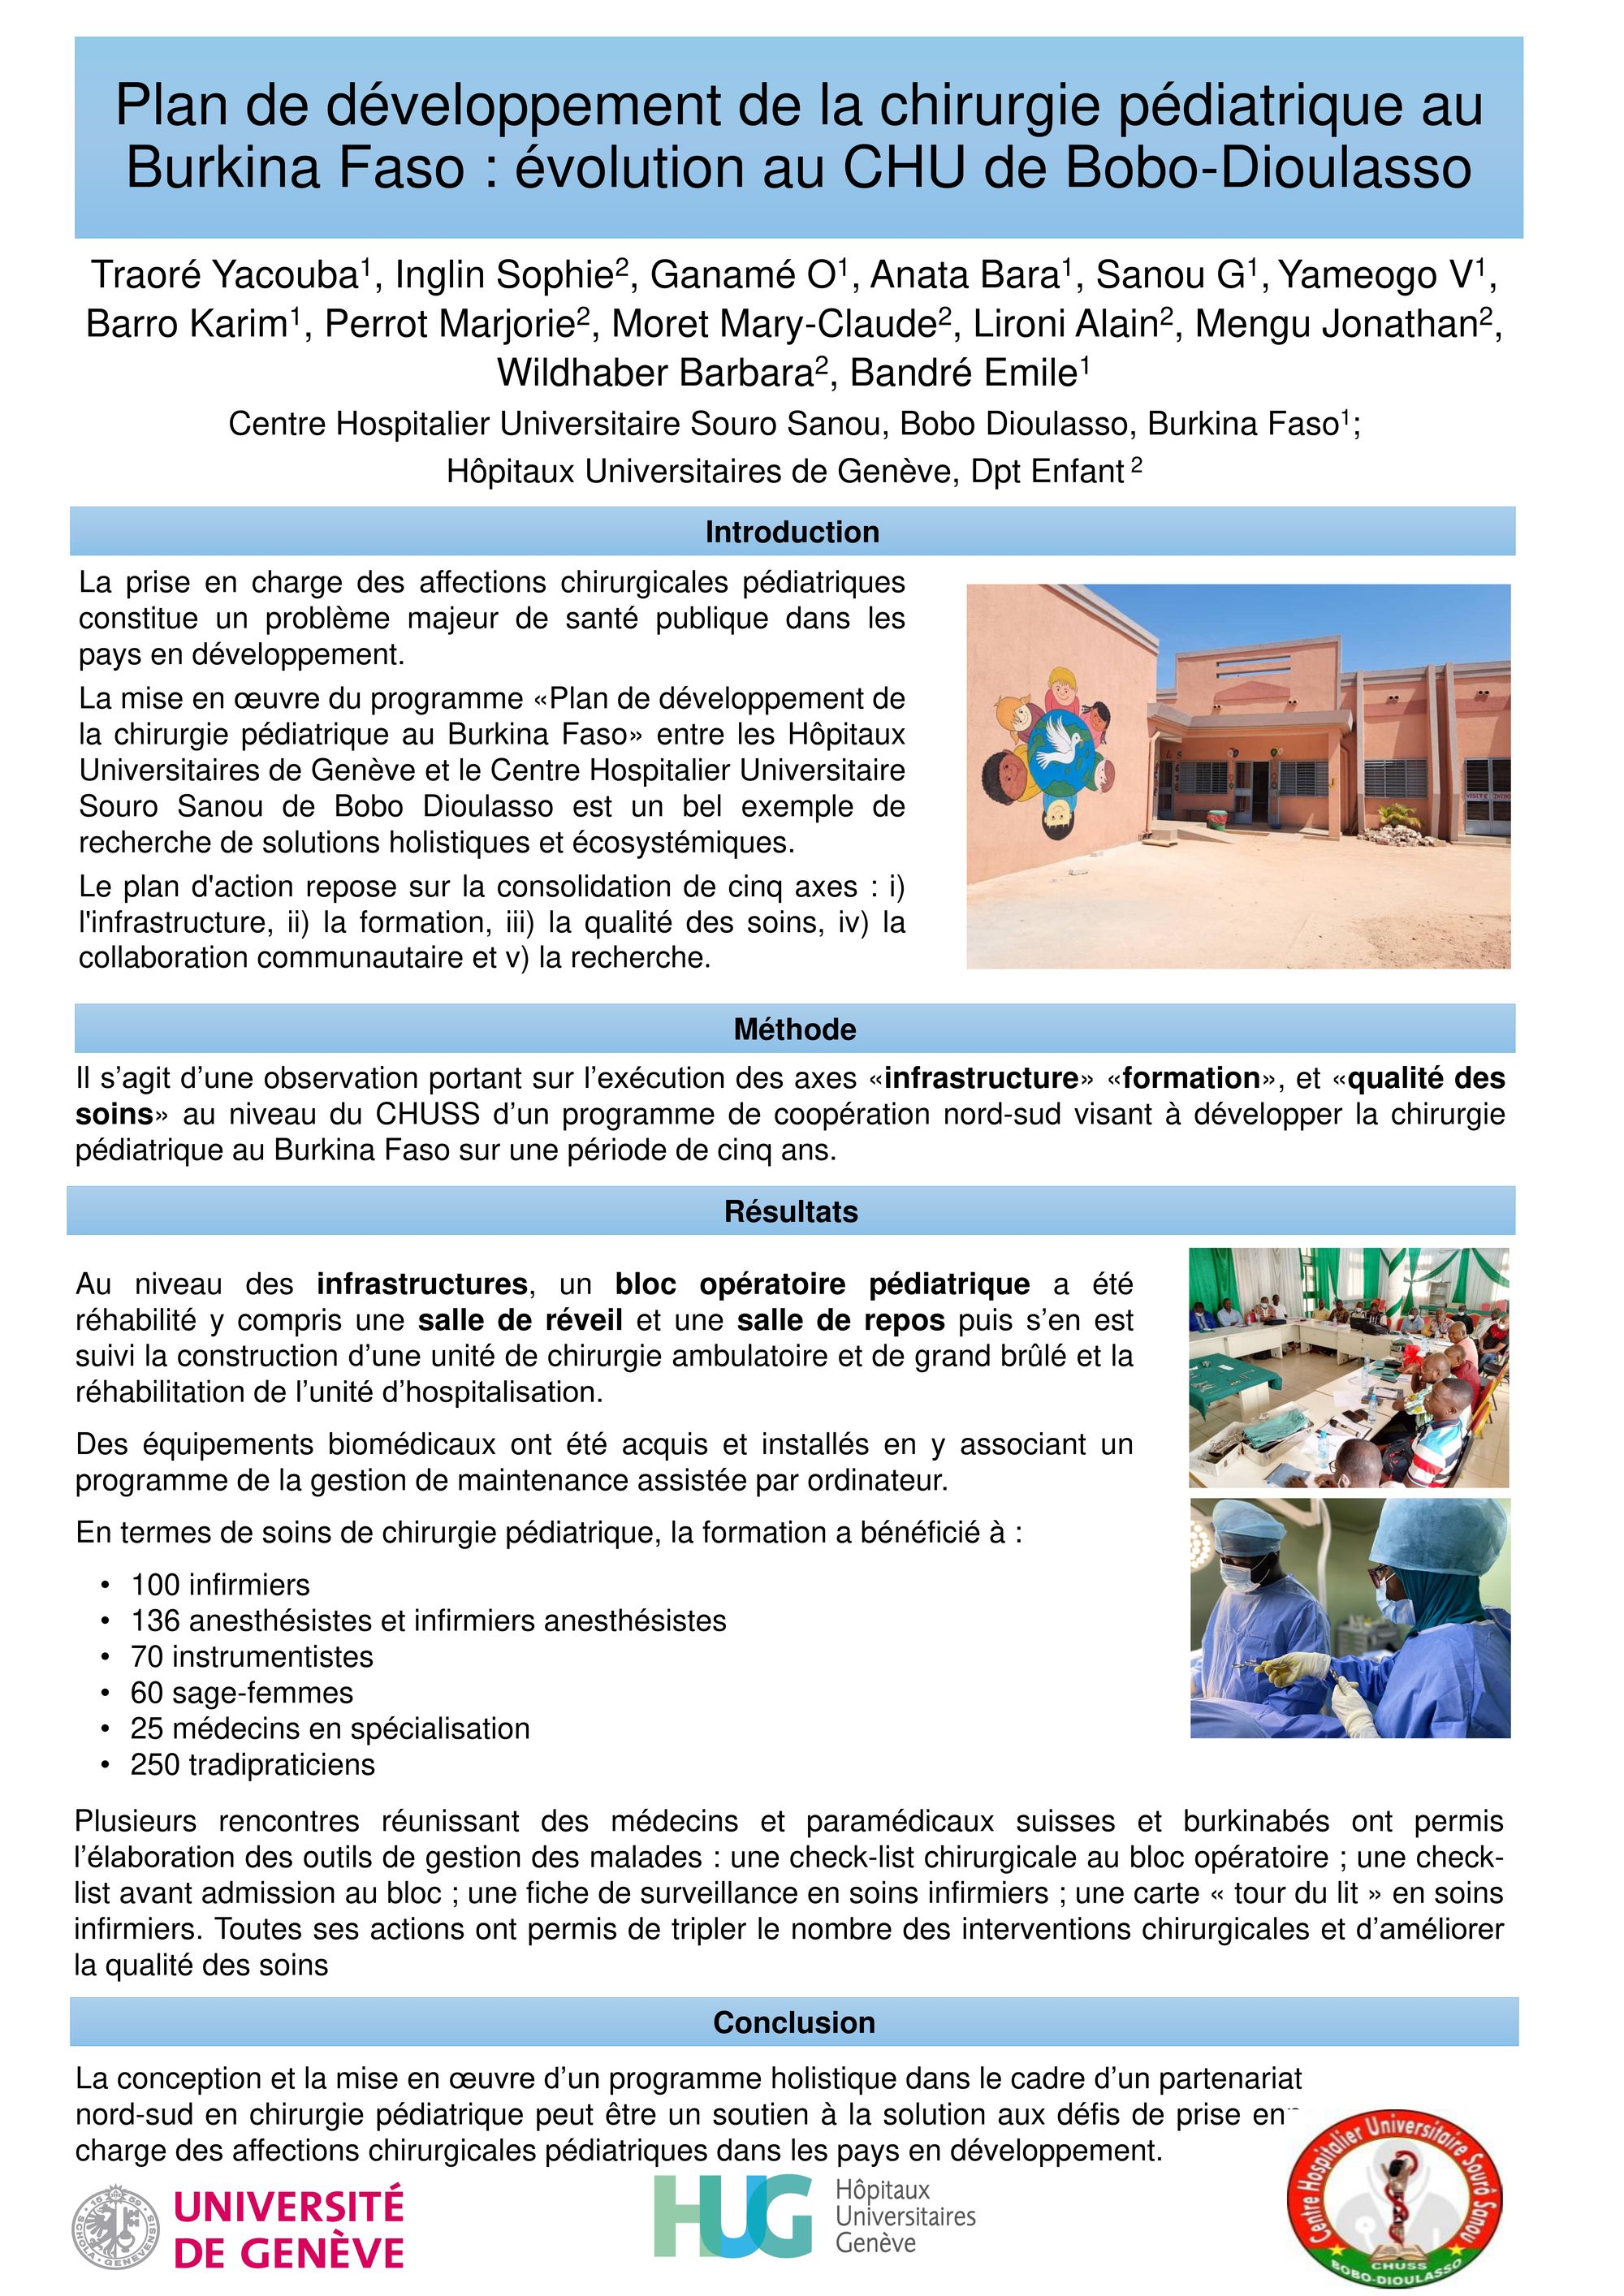 Plan de développement de la chirurgie pédiatrique au Burkina Faso : évolution au CHU de Bobo-Dioulasso